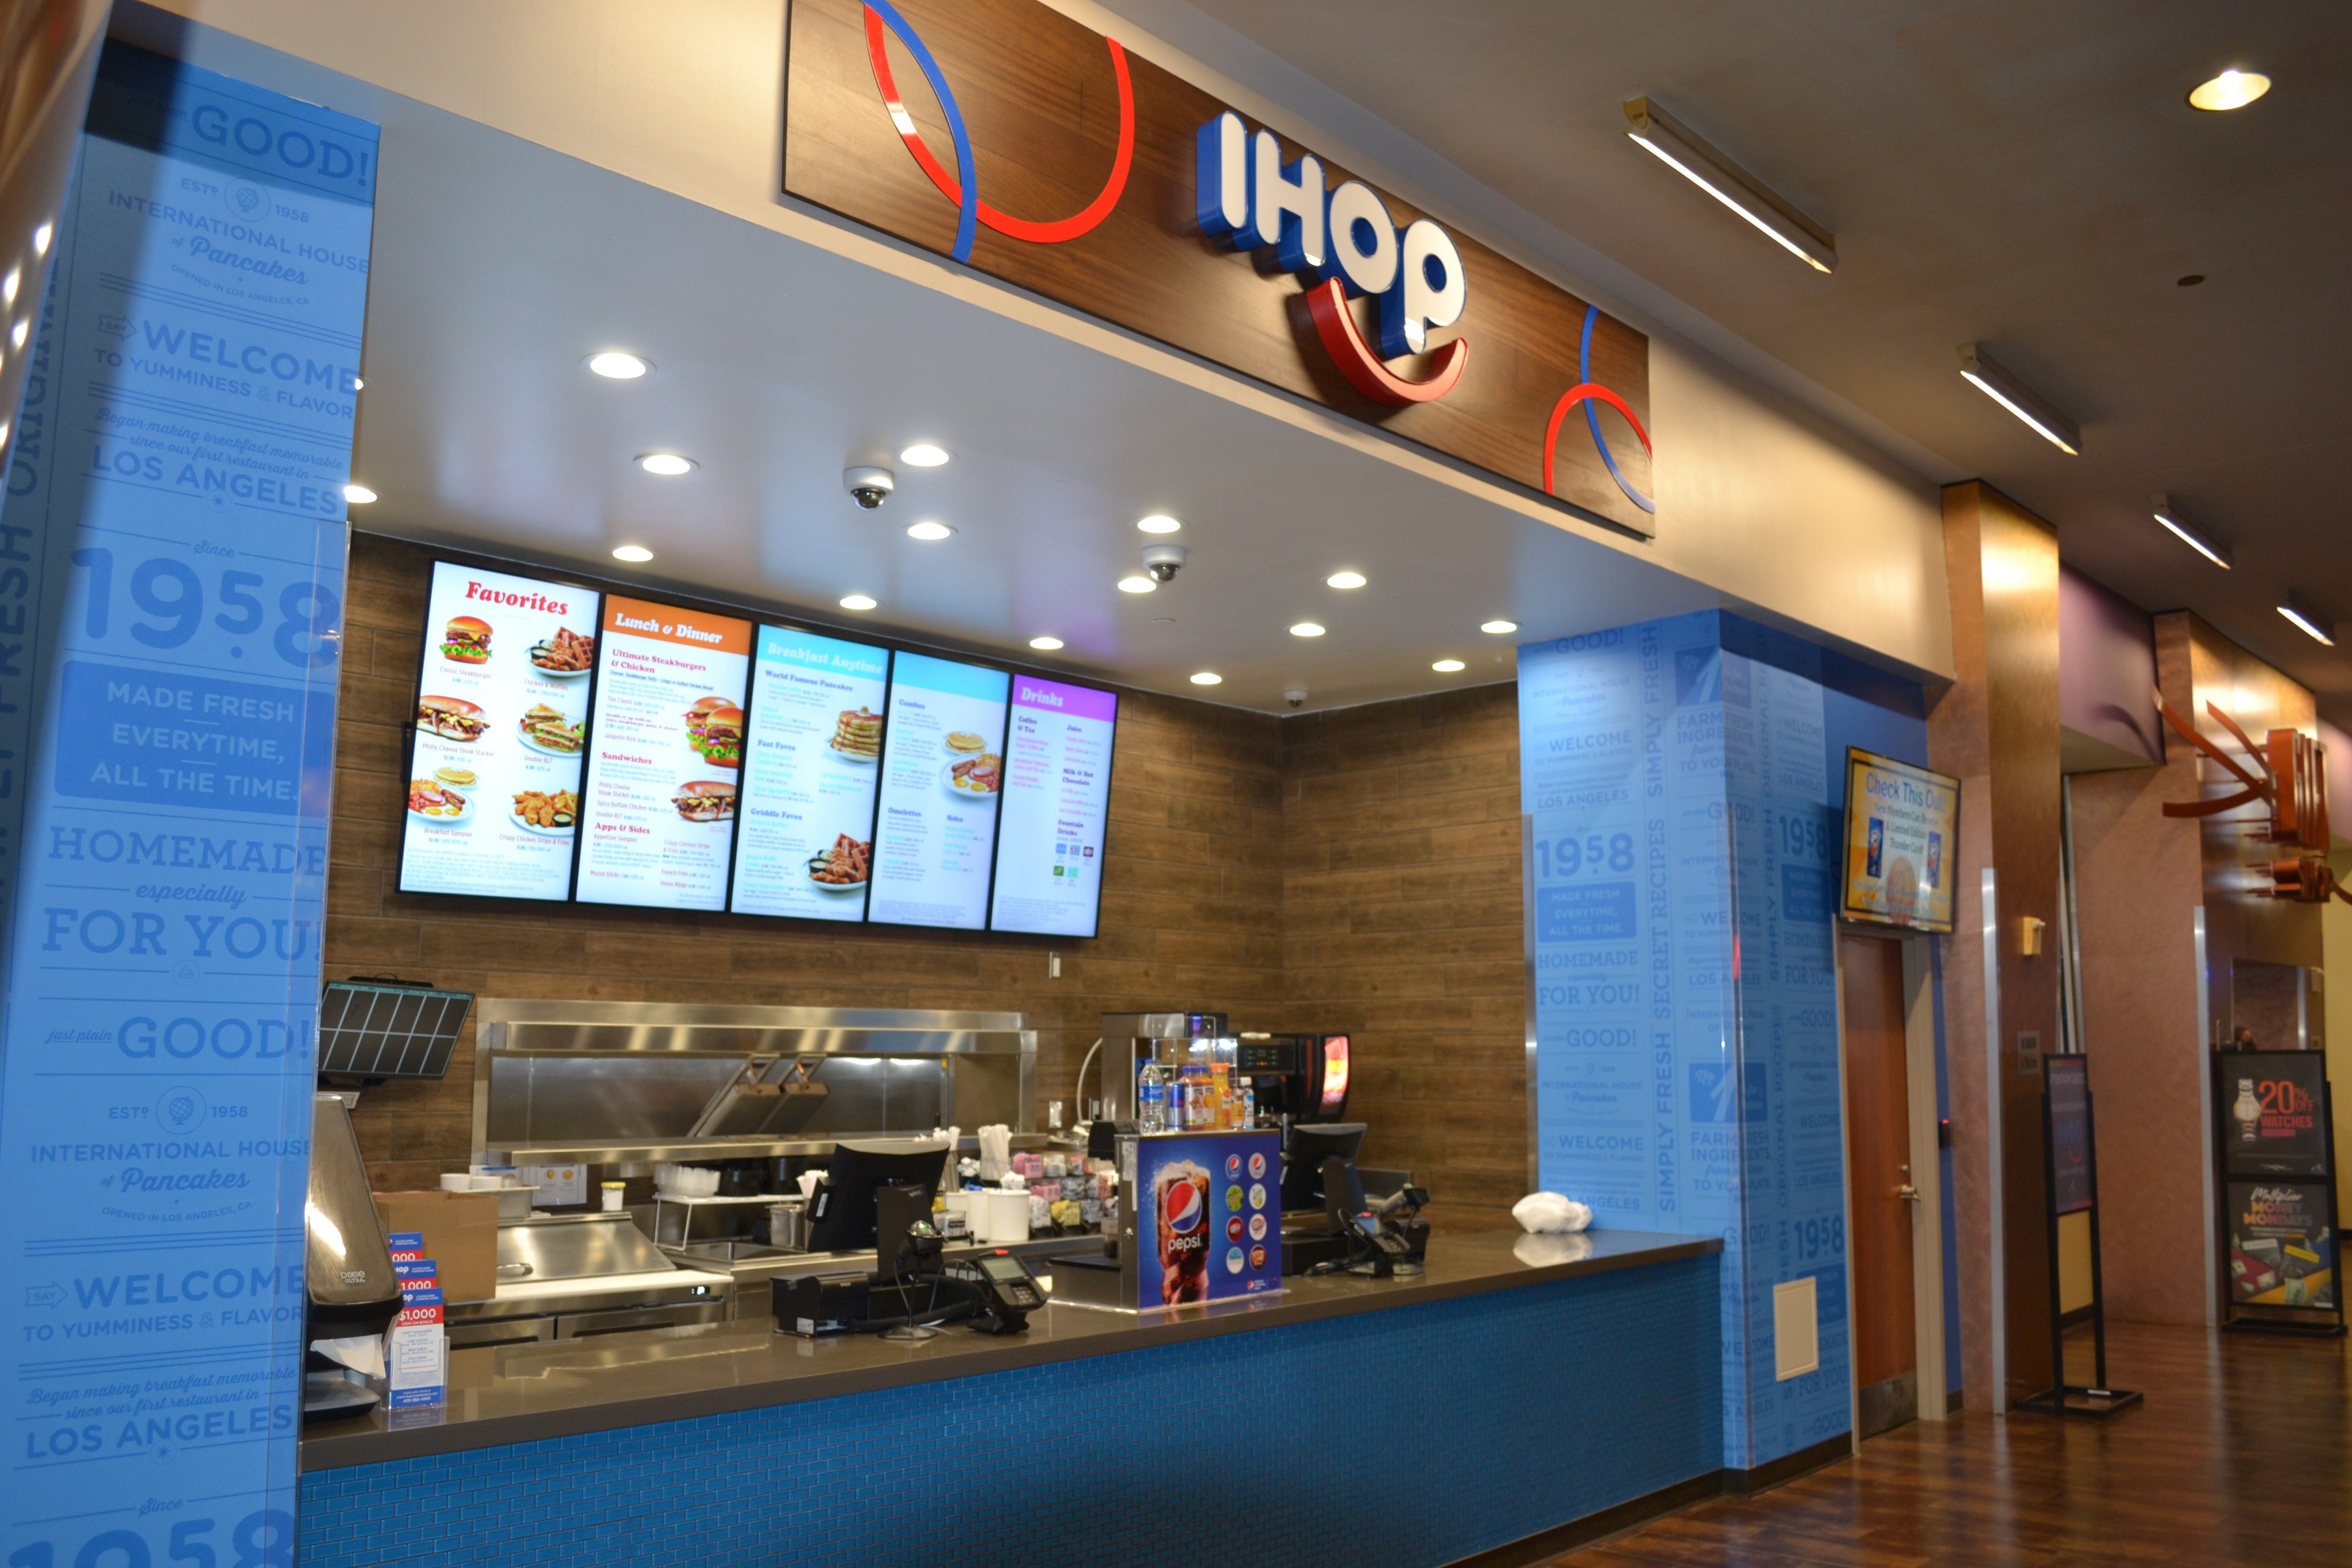 IHOP opens at location of former Prestige Diner in East Windsor